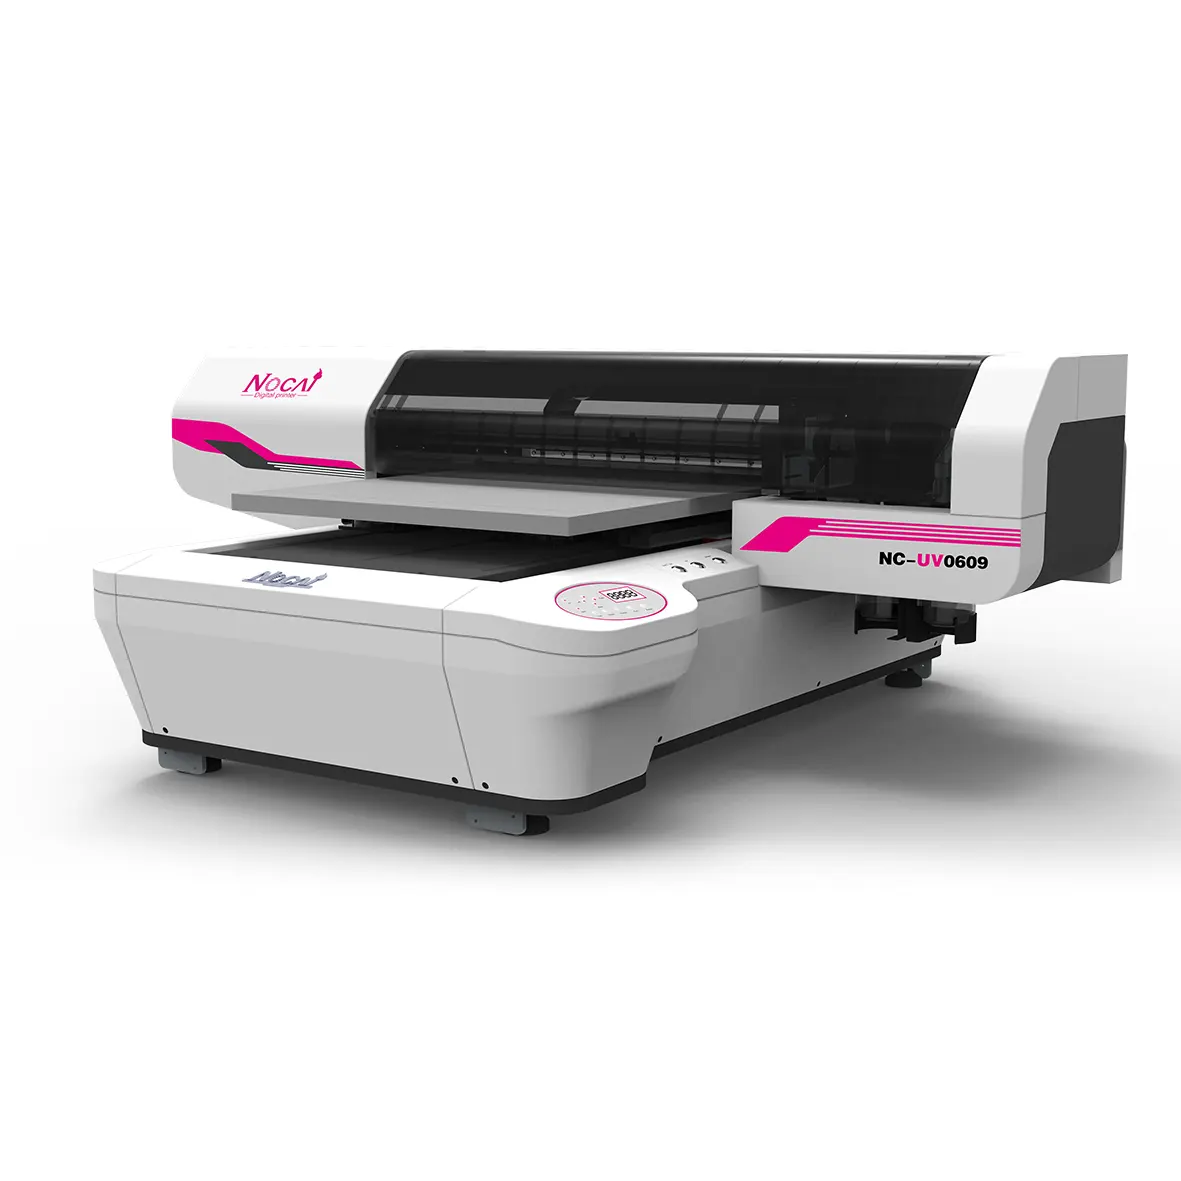 Nocai यूवी प्रिंटर यूवी प्रिंटर कीमत डीलर और वितरक के लिए यूवी flatbed प्रिंटर